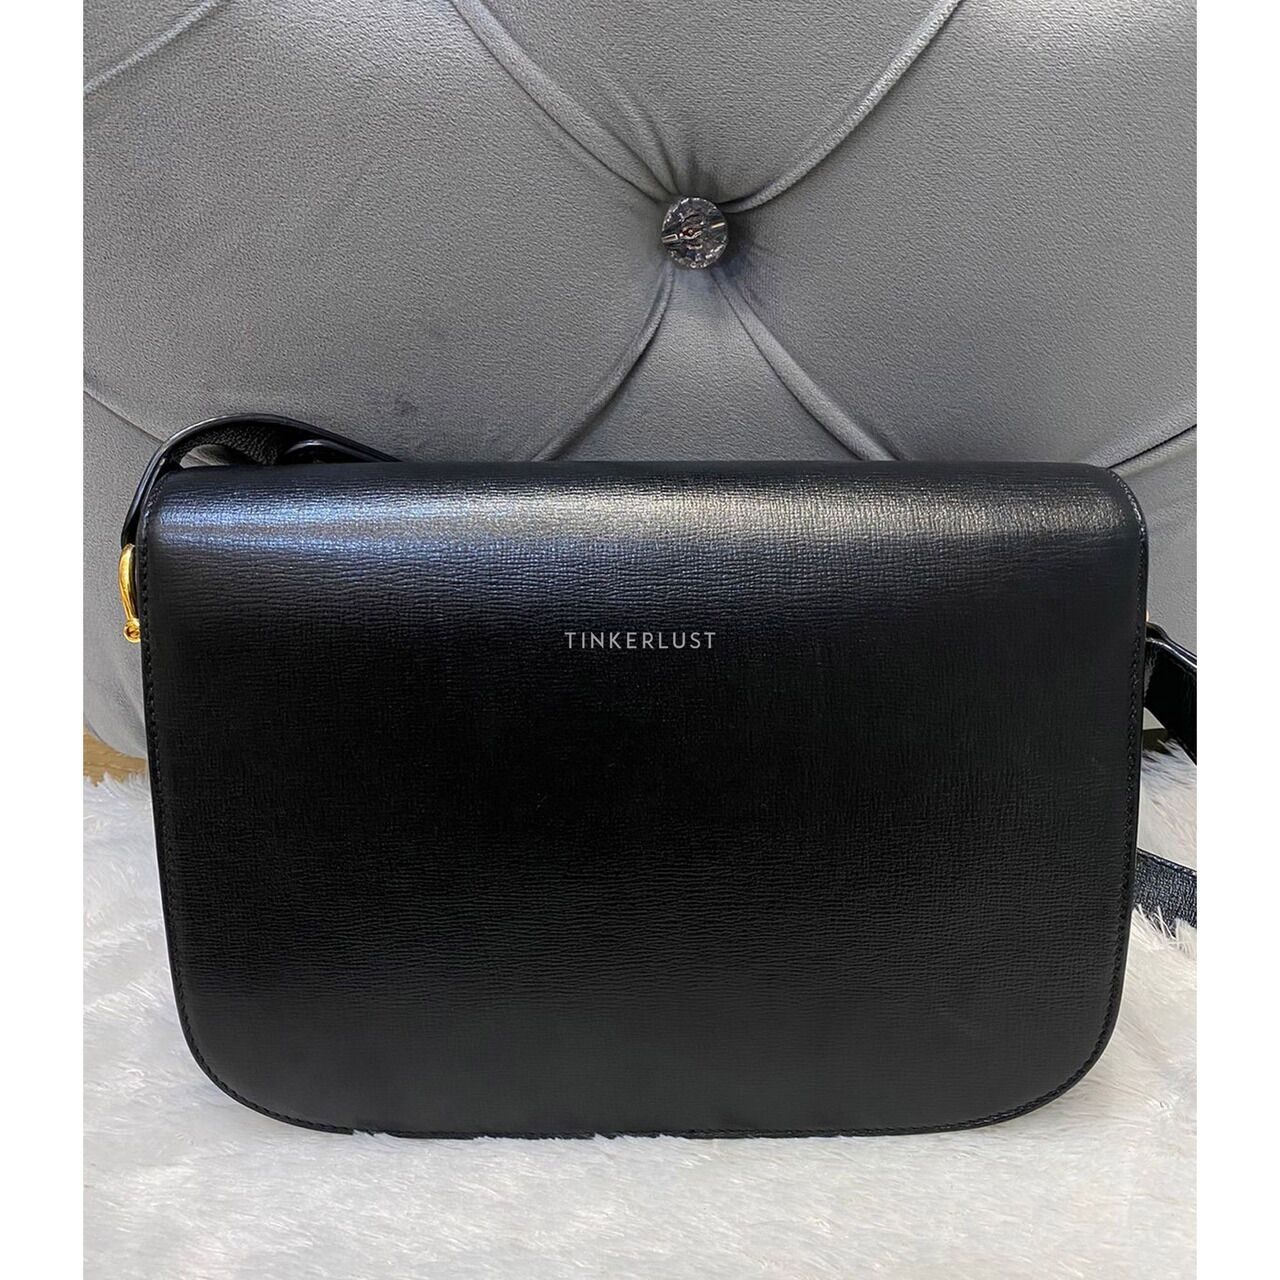 Gucci Horsebit Black Leather Shoulder Bag